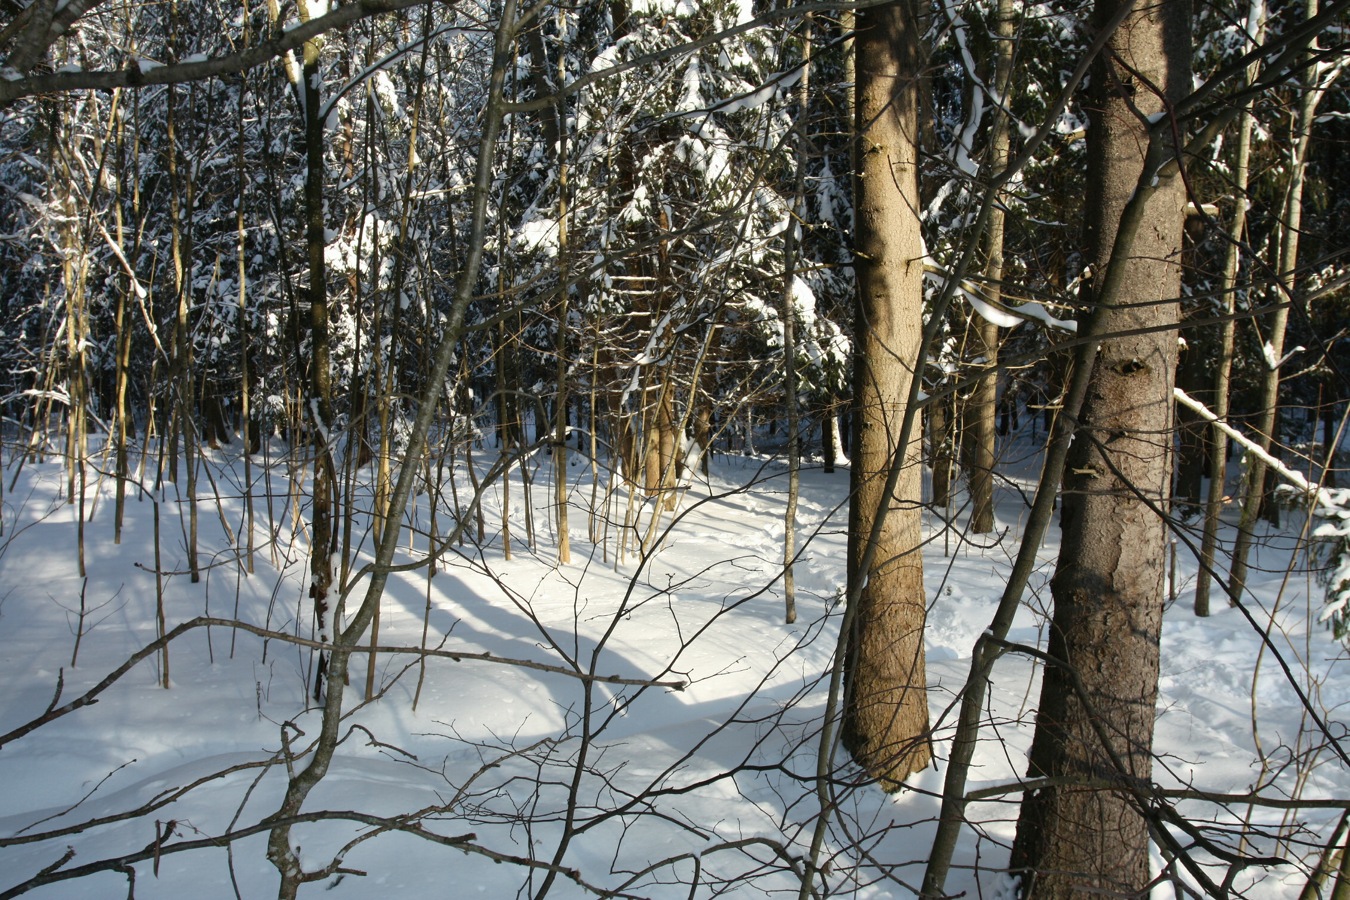 Парк "Сергиевка", изображение ландшафта.